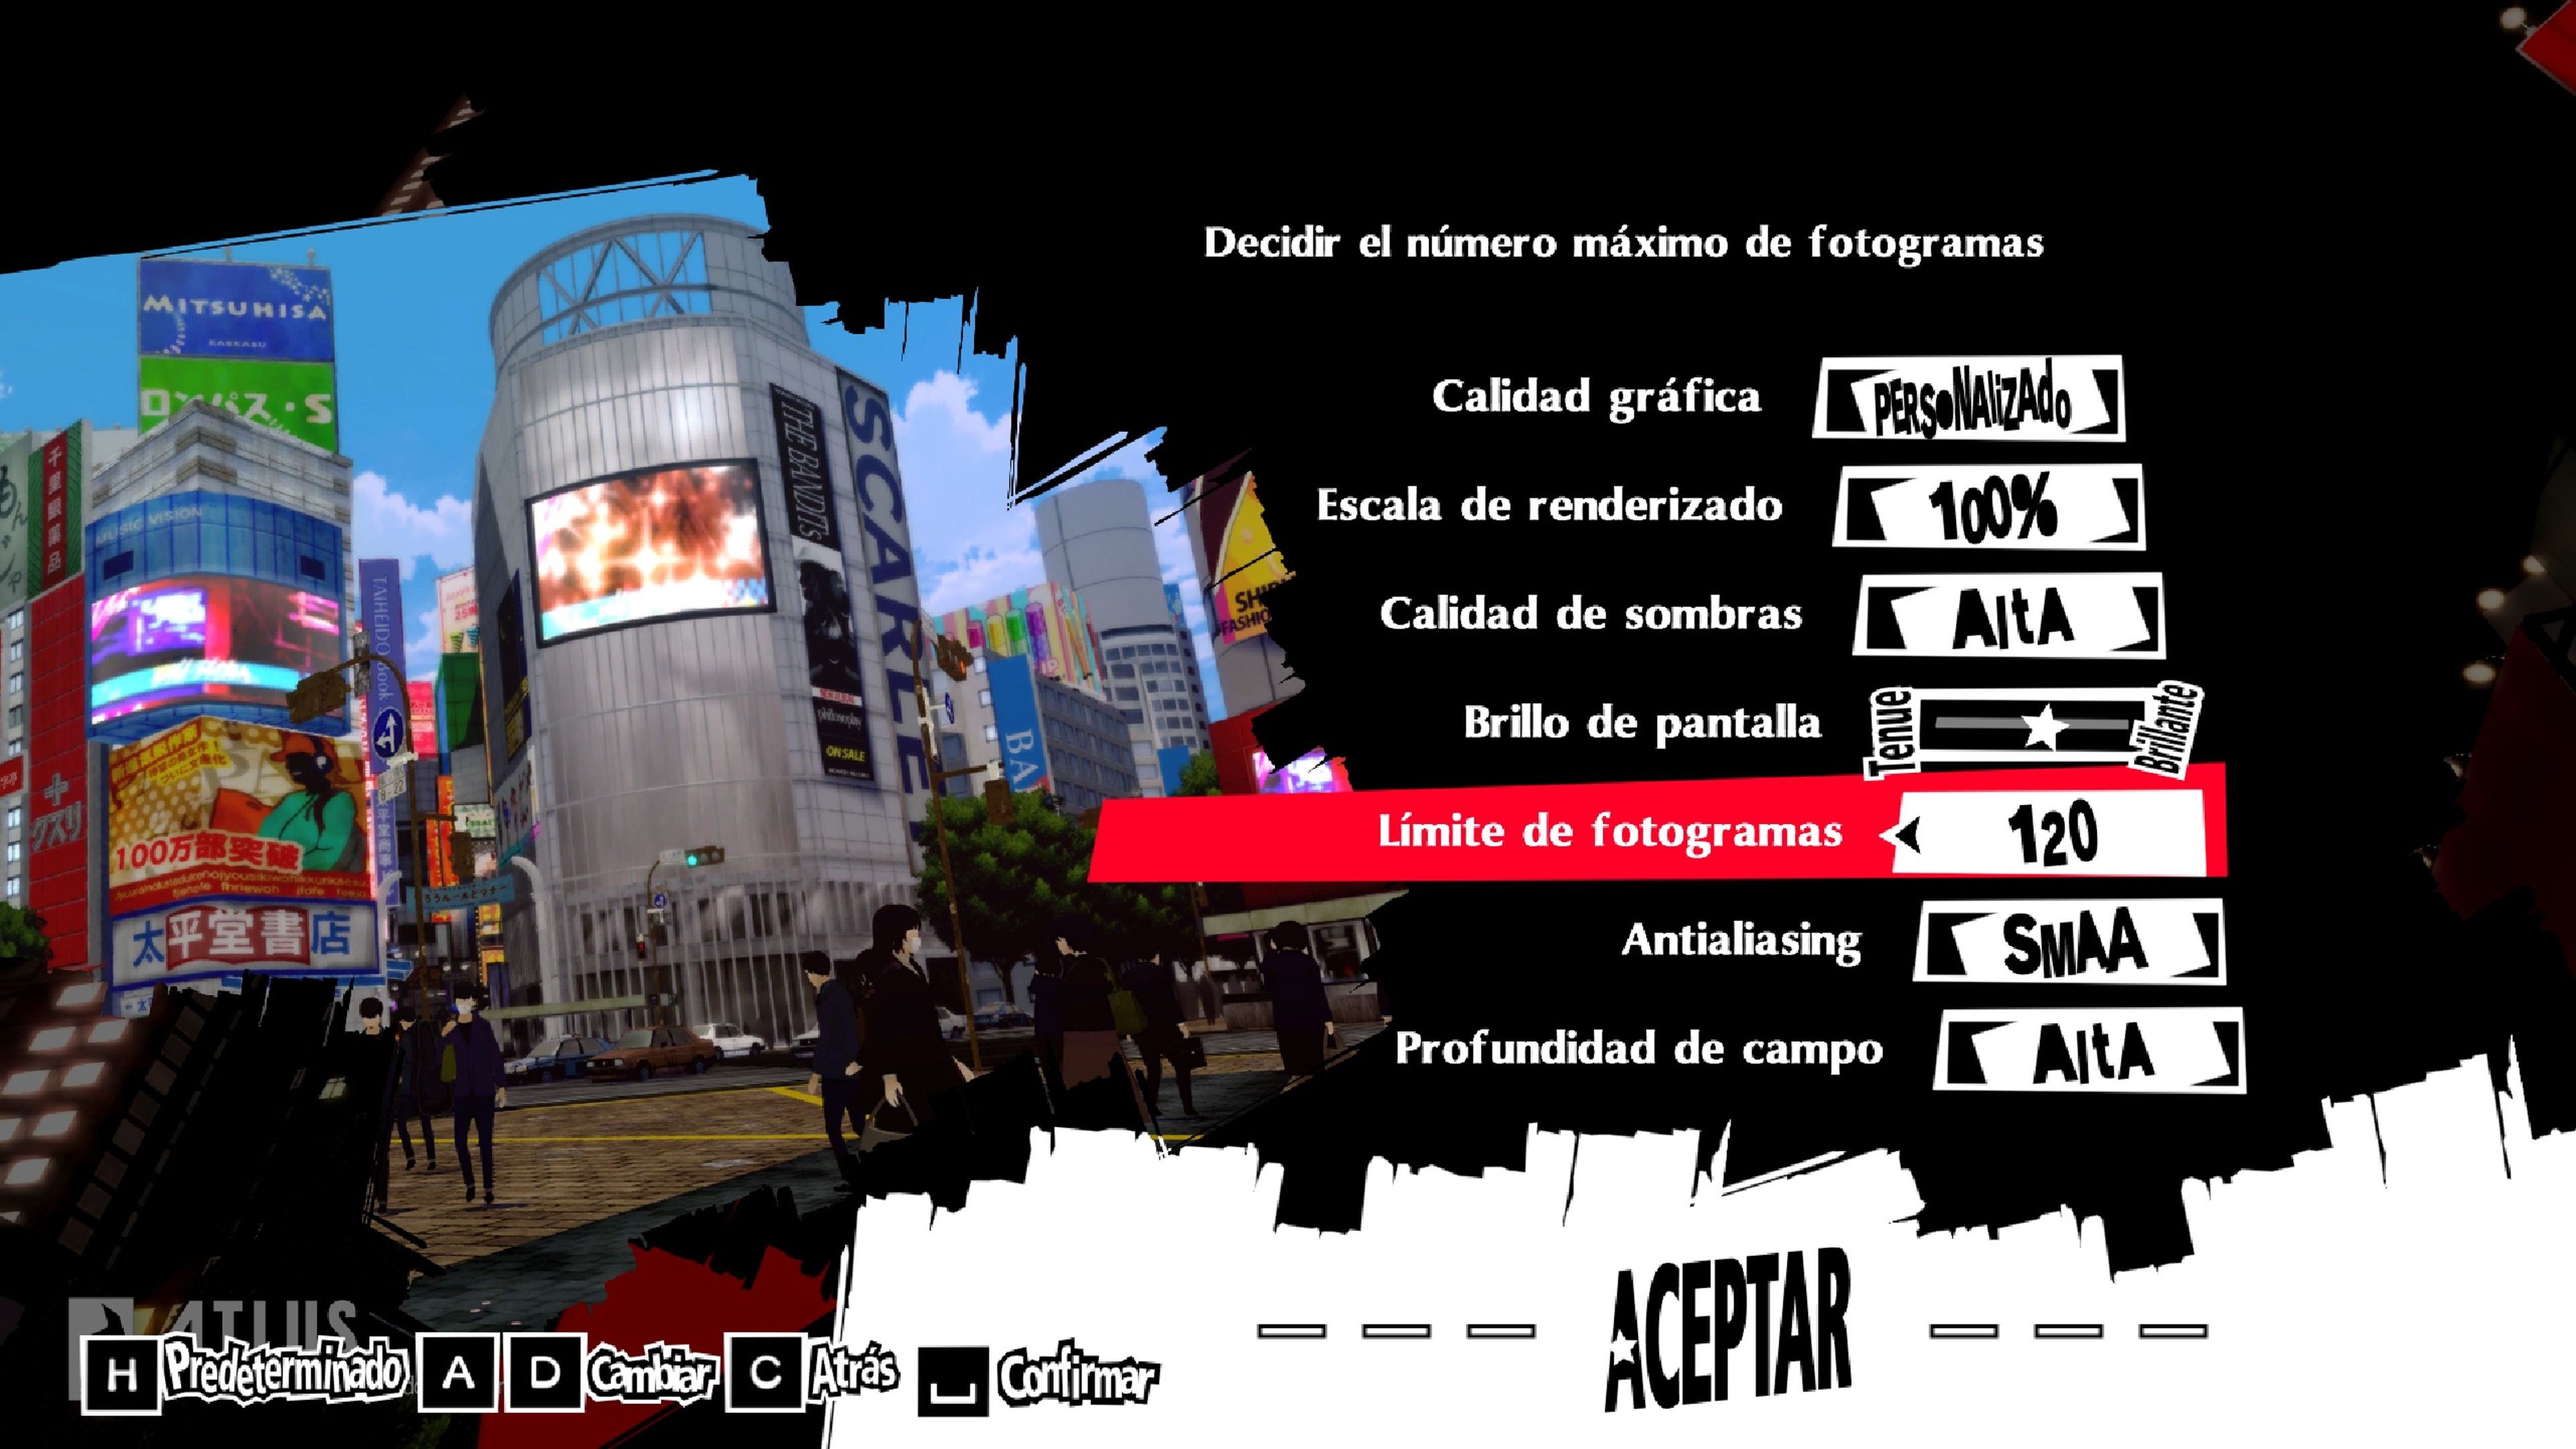 Análisis de Persona 5 Royal para PS4, una joya en español